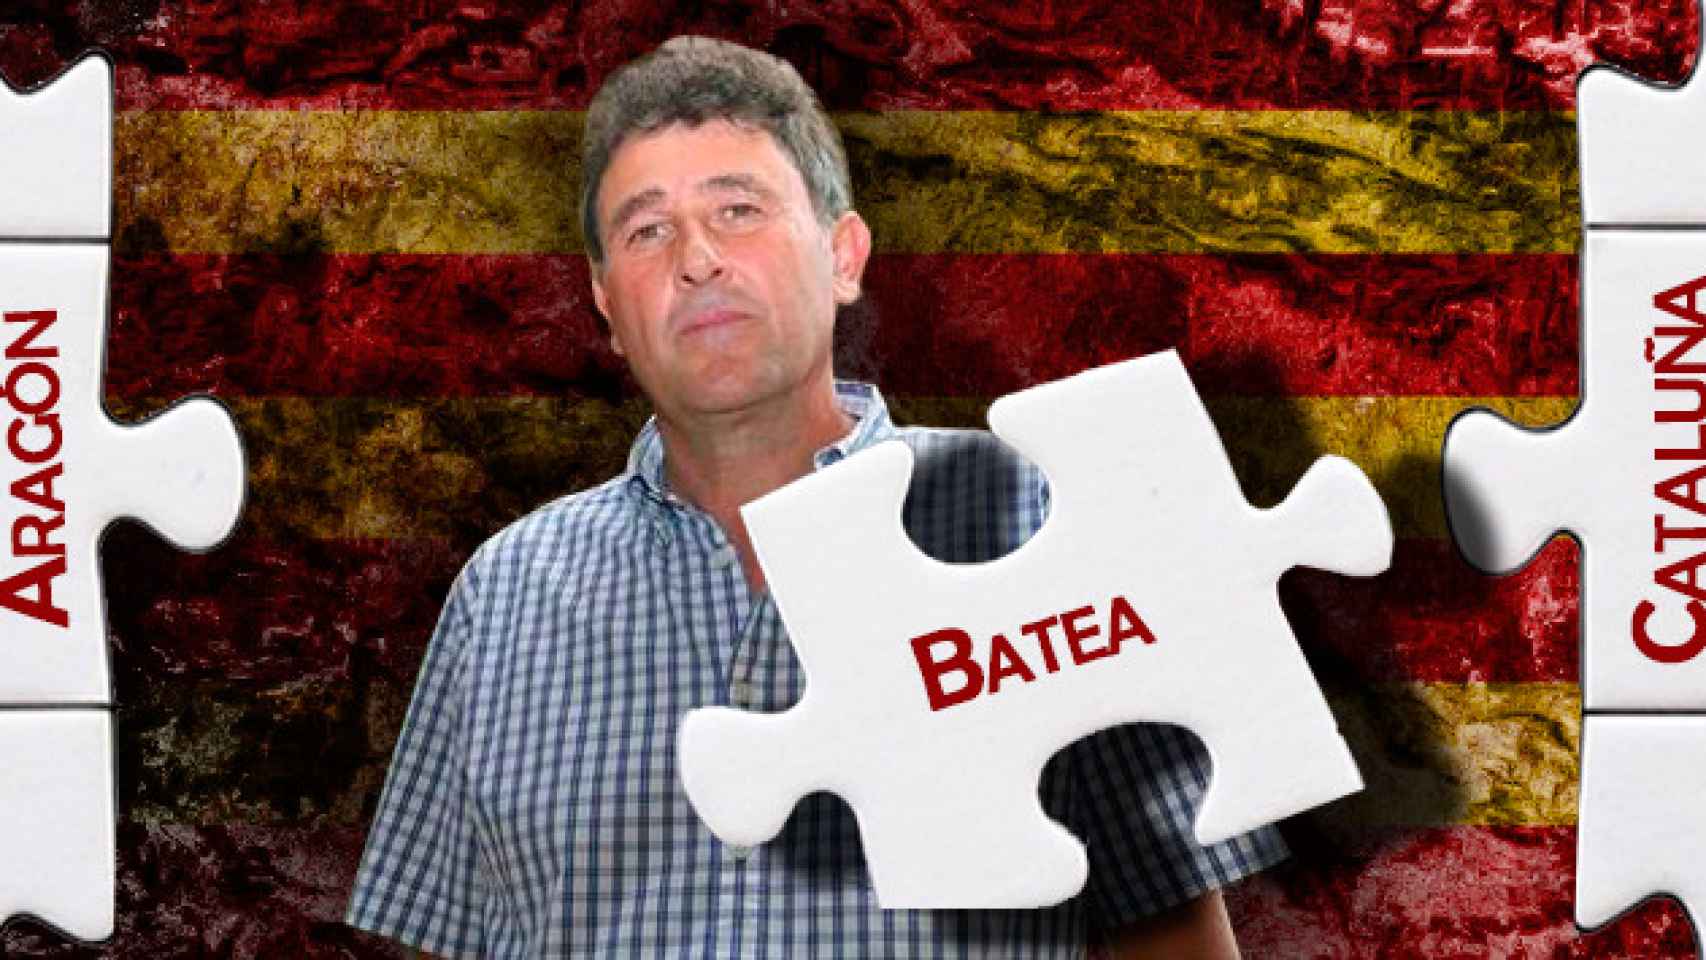 El alcalde de Batea, Joaquim Paladella, entre Cataluña y Aragón / FOTOMONTAJE DE CG